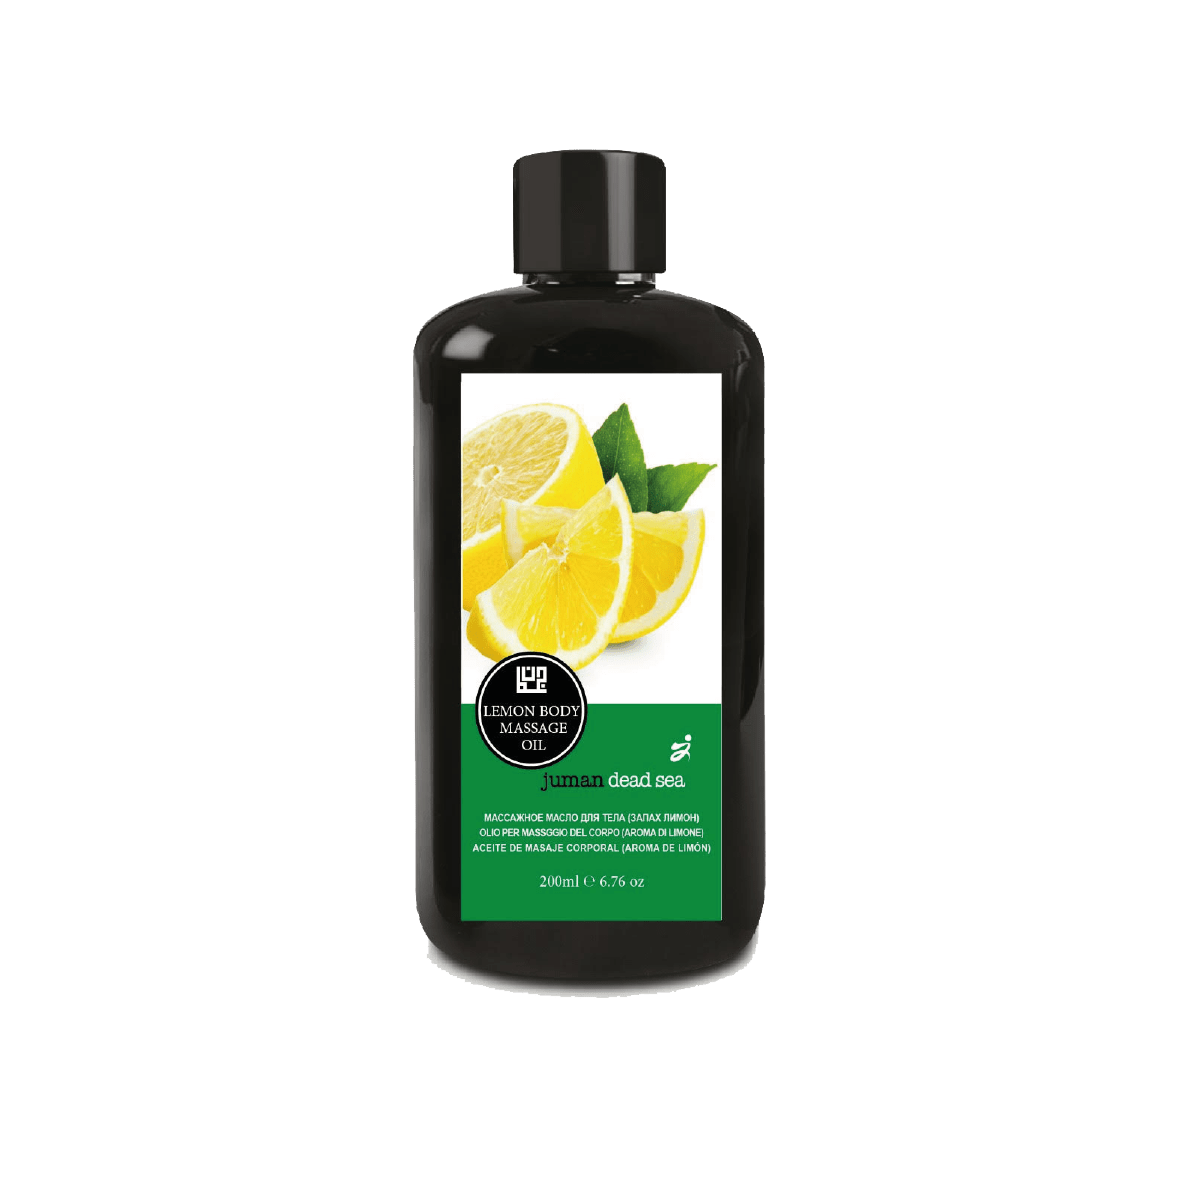 Lemon Body Massage Oil